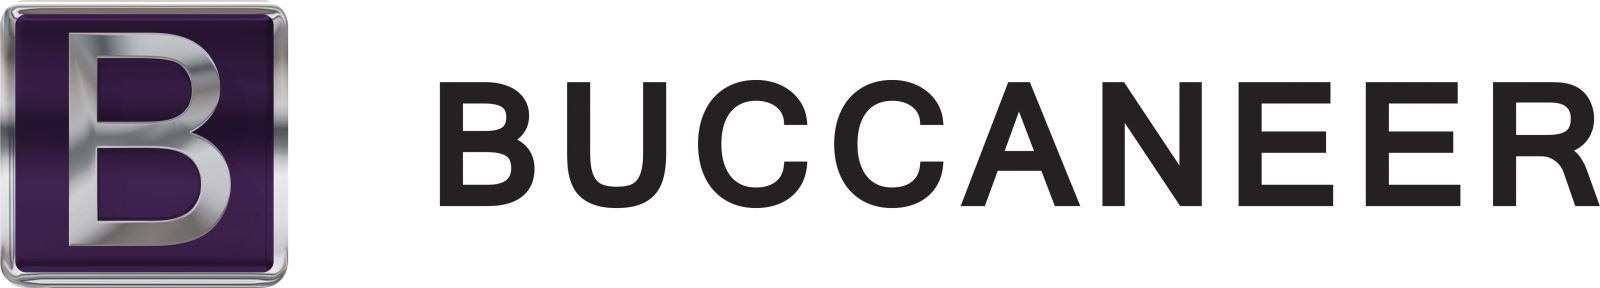 Buccaneer logo